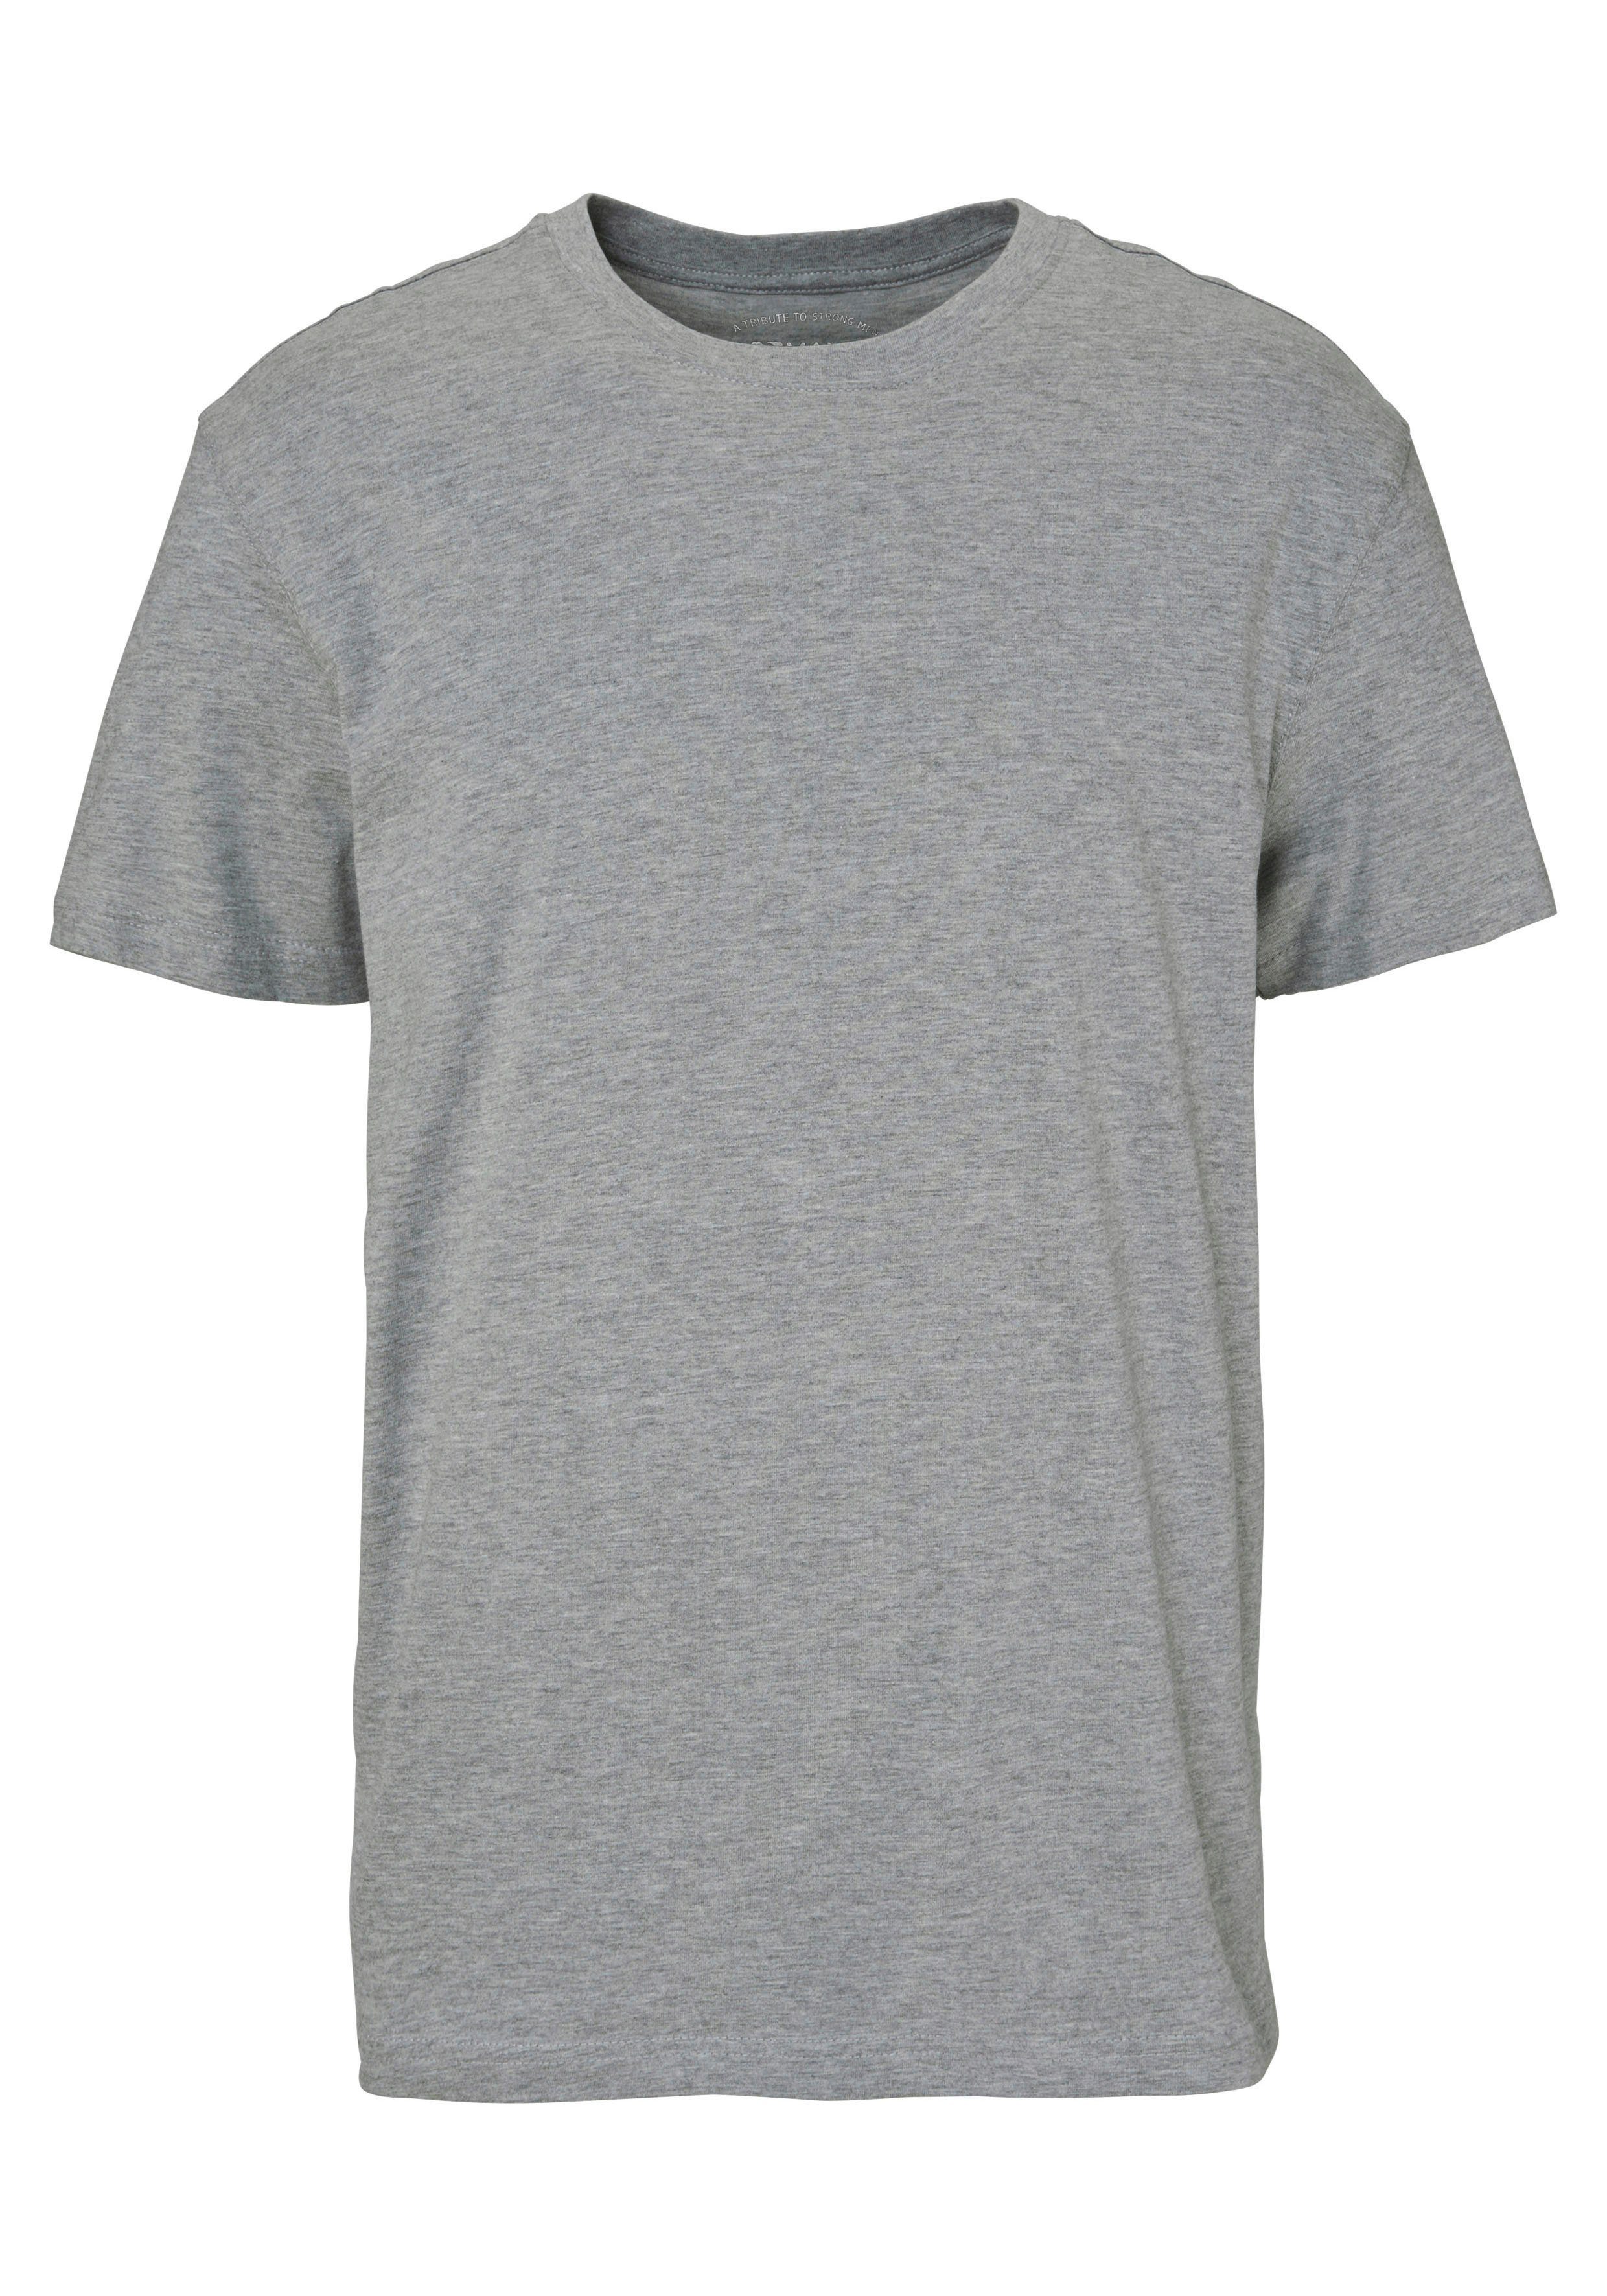 Unterzieh- perfekt 3-tlg., Man's marine, als grau-meliert 3er-Pack) (Packung, rot, World T-Shirt T-shirt